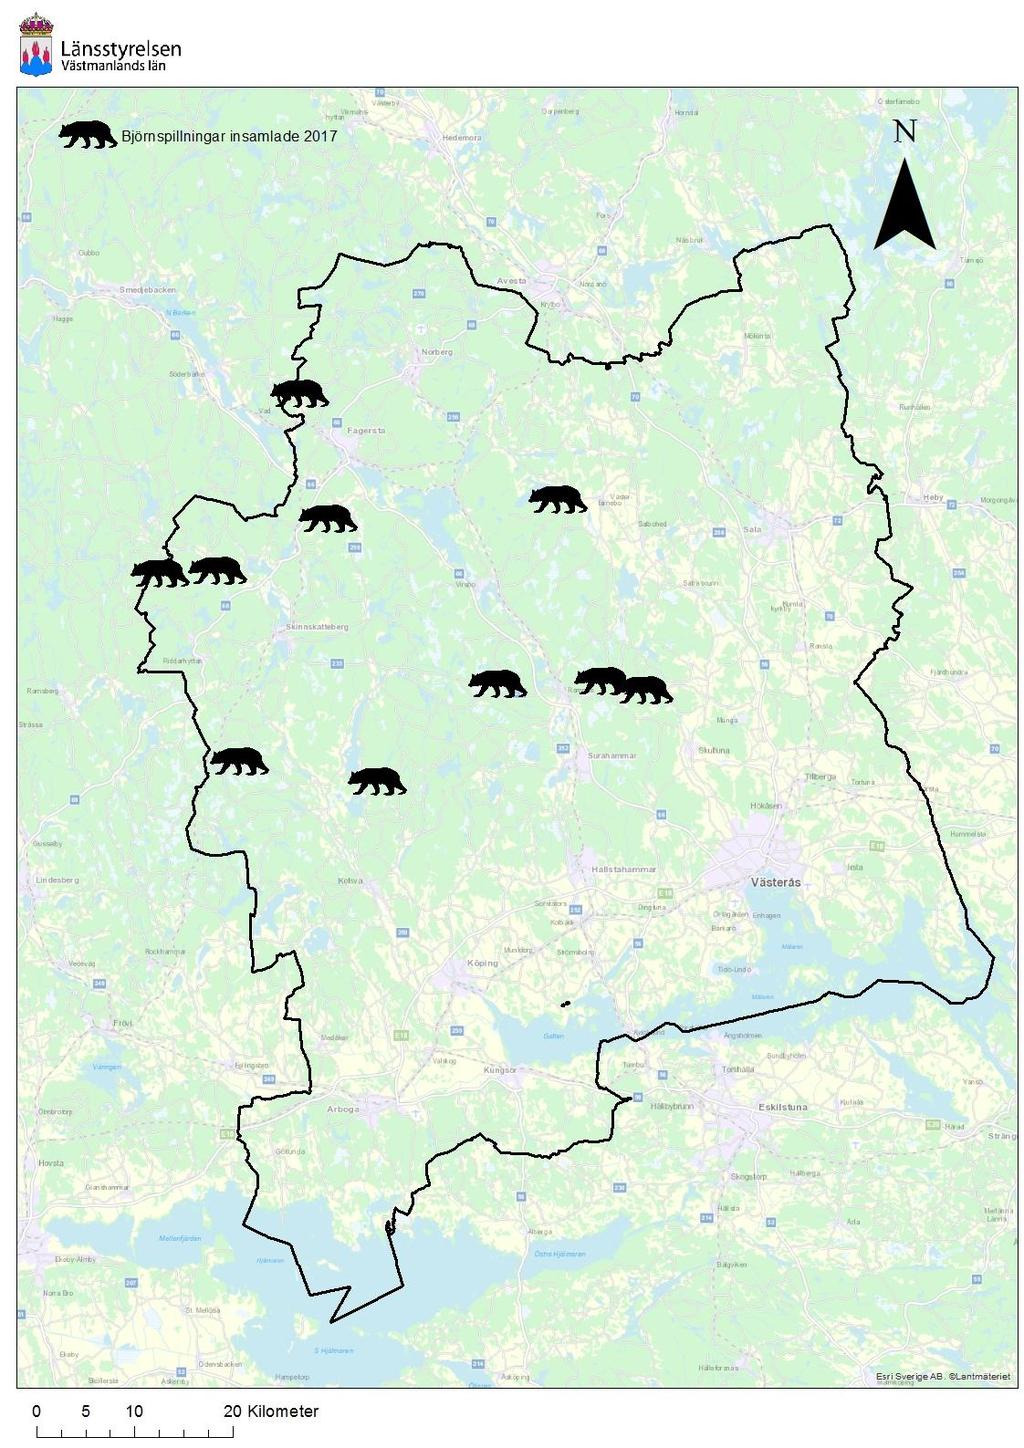 2.4 Spillningsinventering björn Under inventeringssäsongen genomfördes en spillningsinventering för björn i länet.